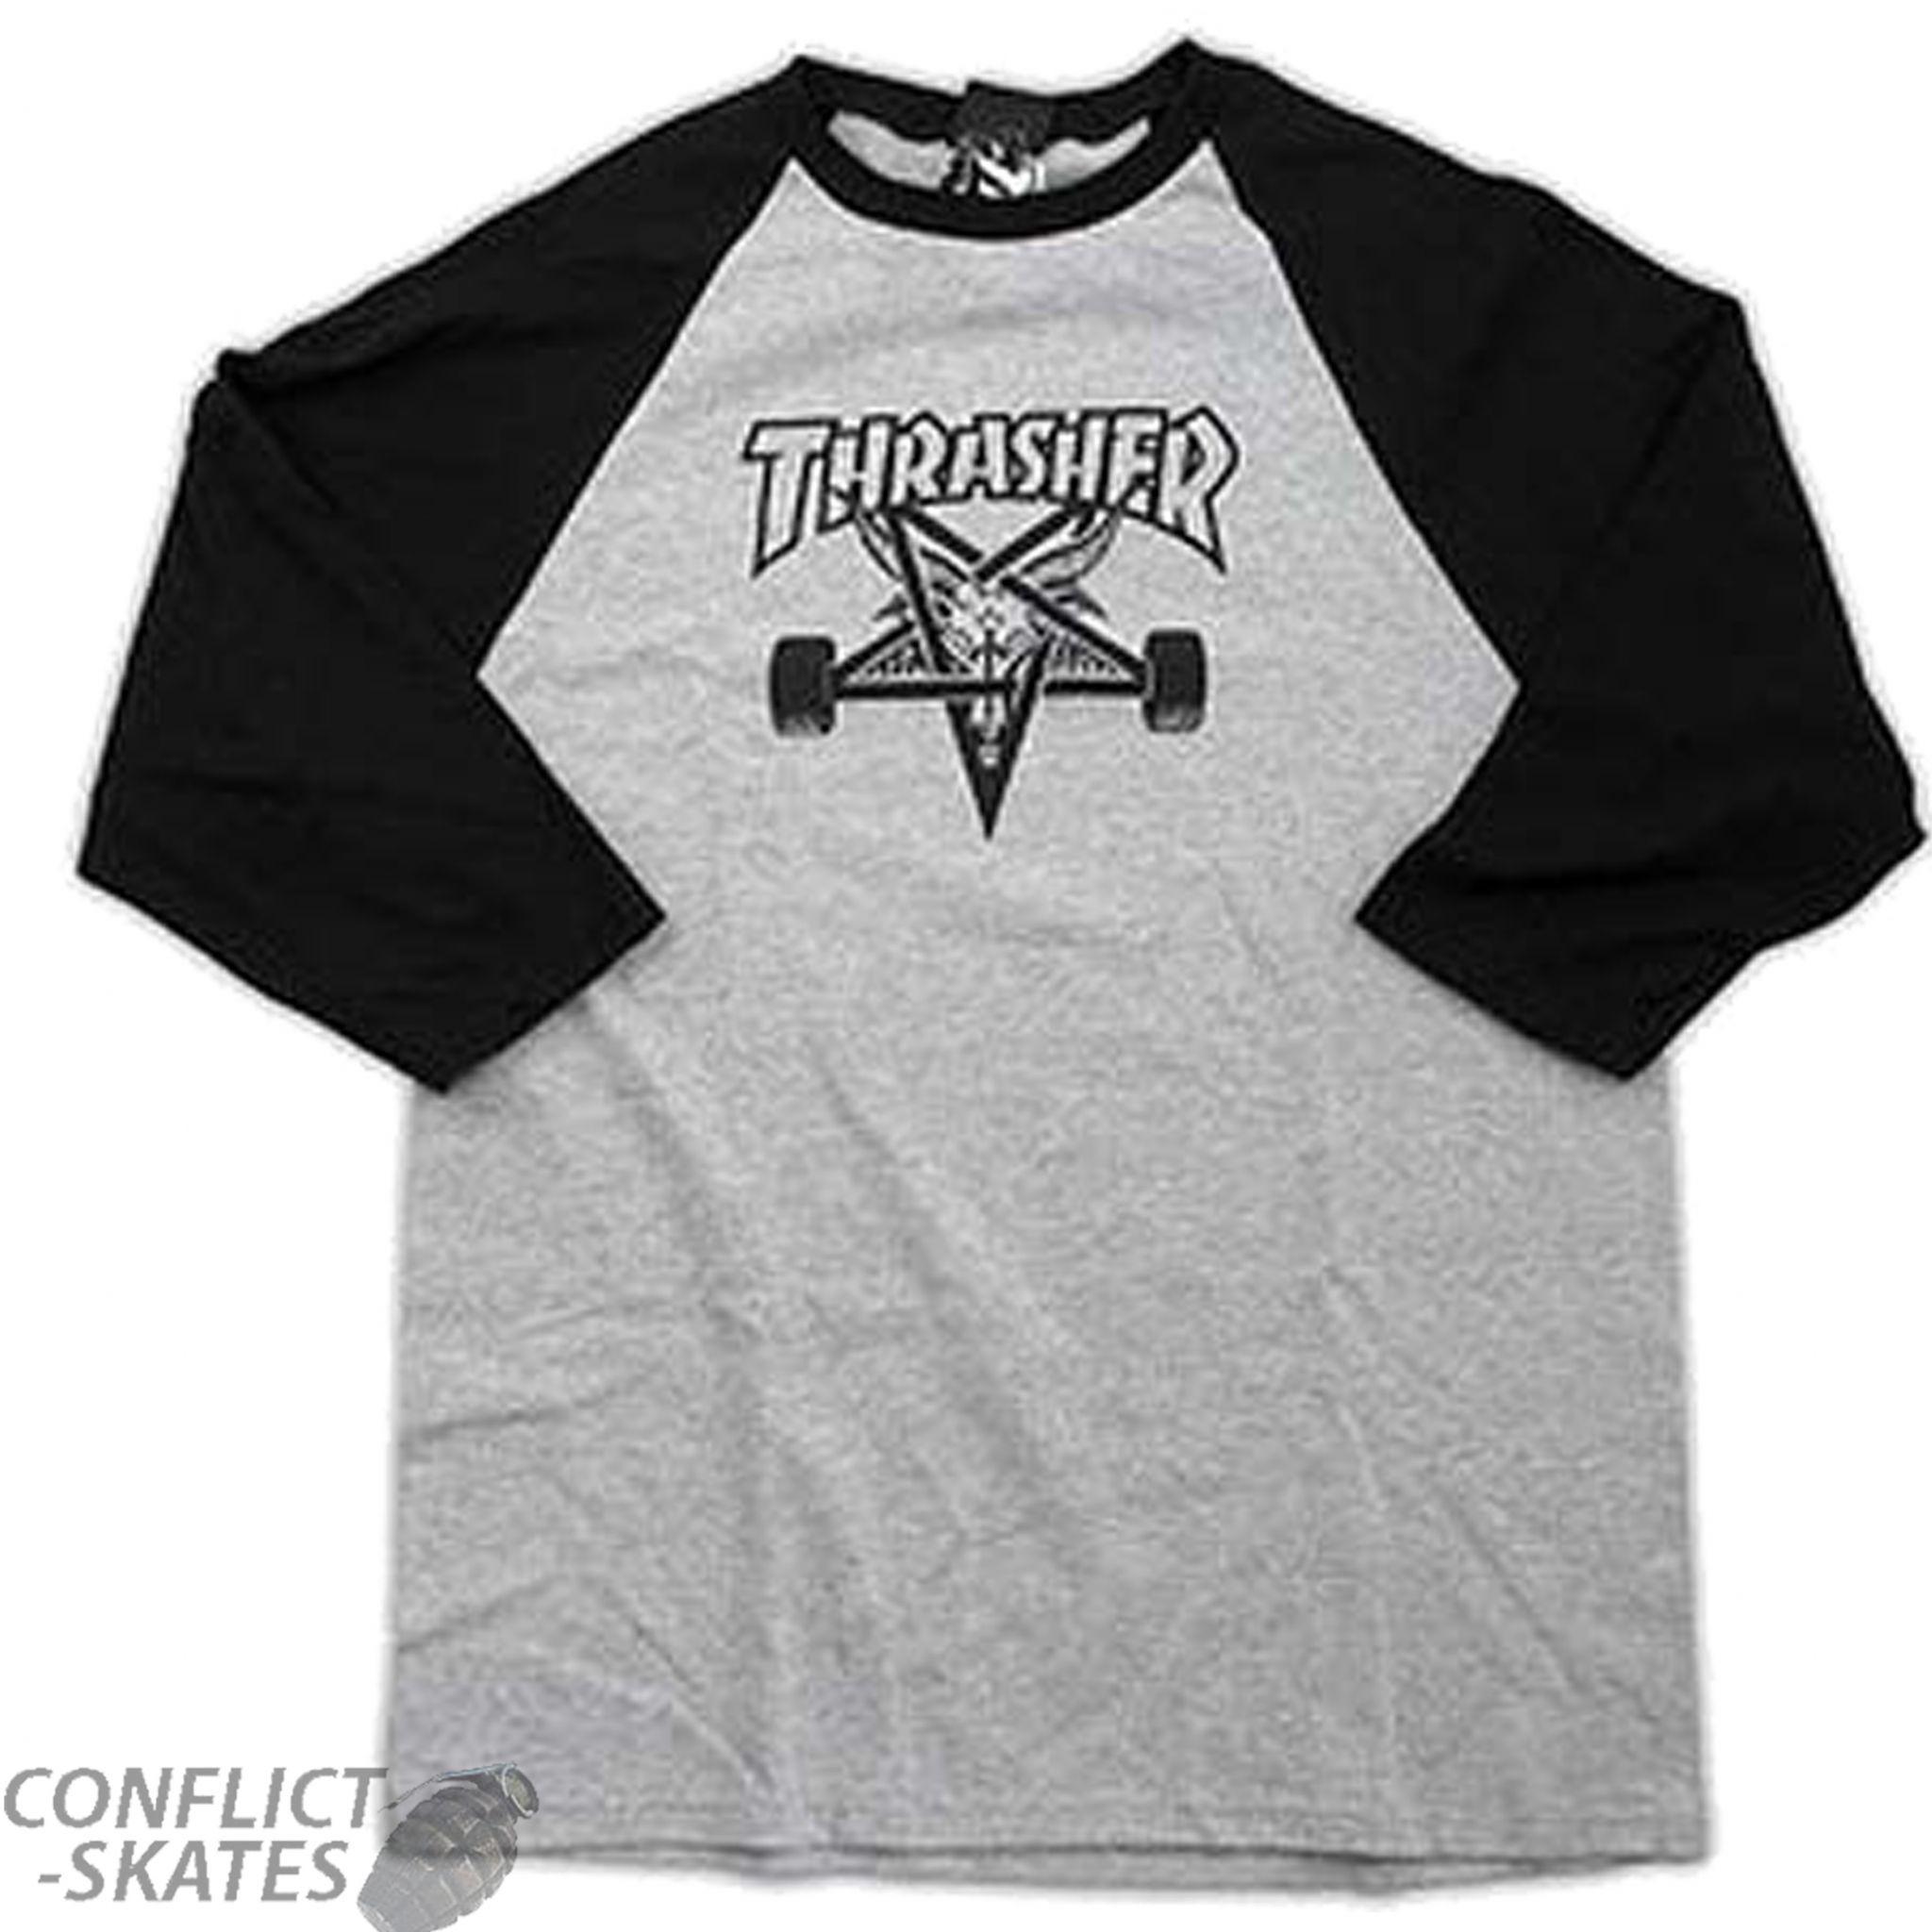 Thrasher Magazine Skate Goat Logo - THRASHER MAGAZINE Skate Goat Raglan T-Shirt 3 4 Sleeve Black Grey ...